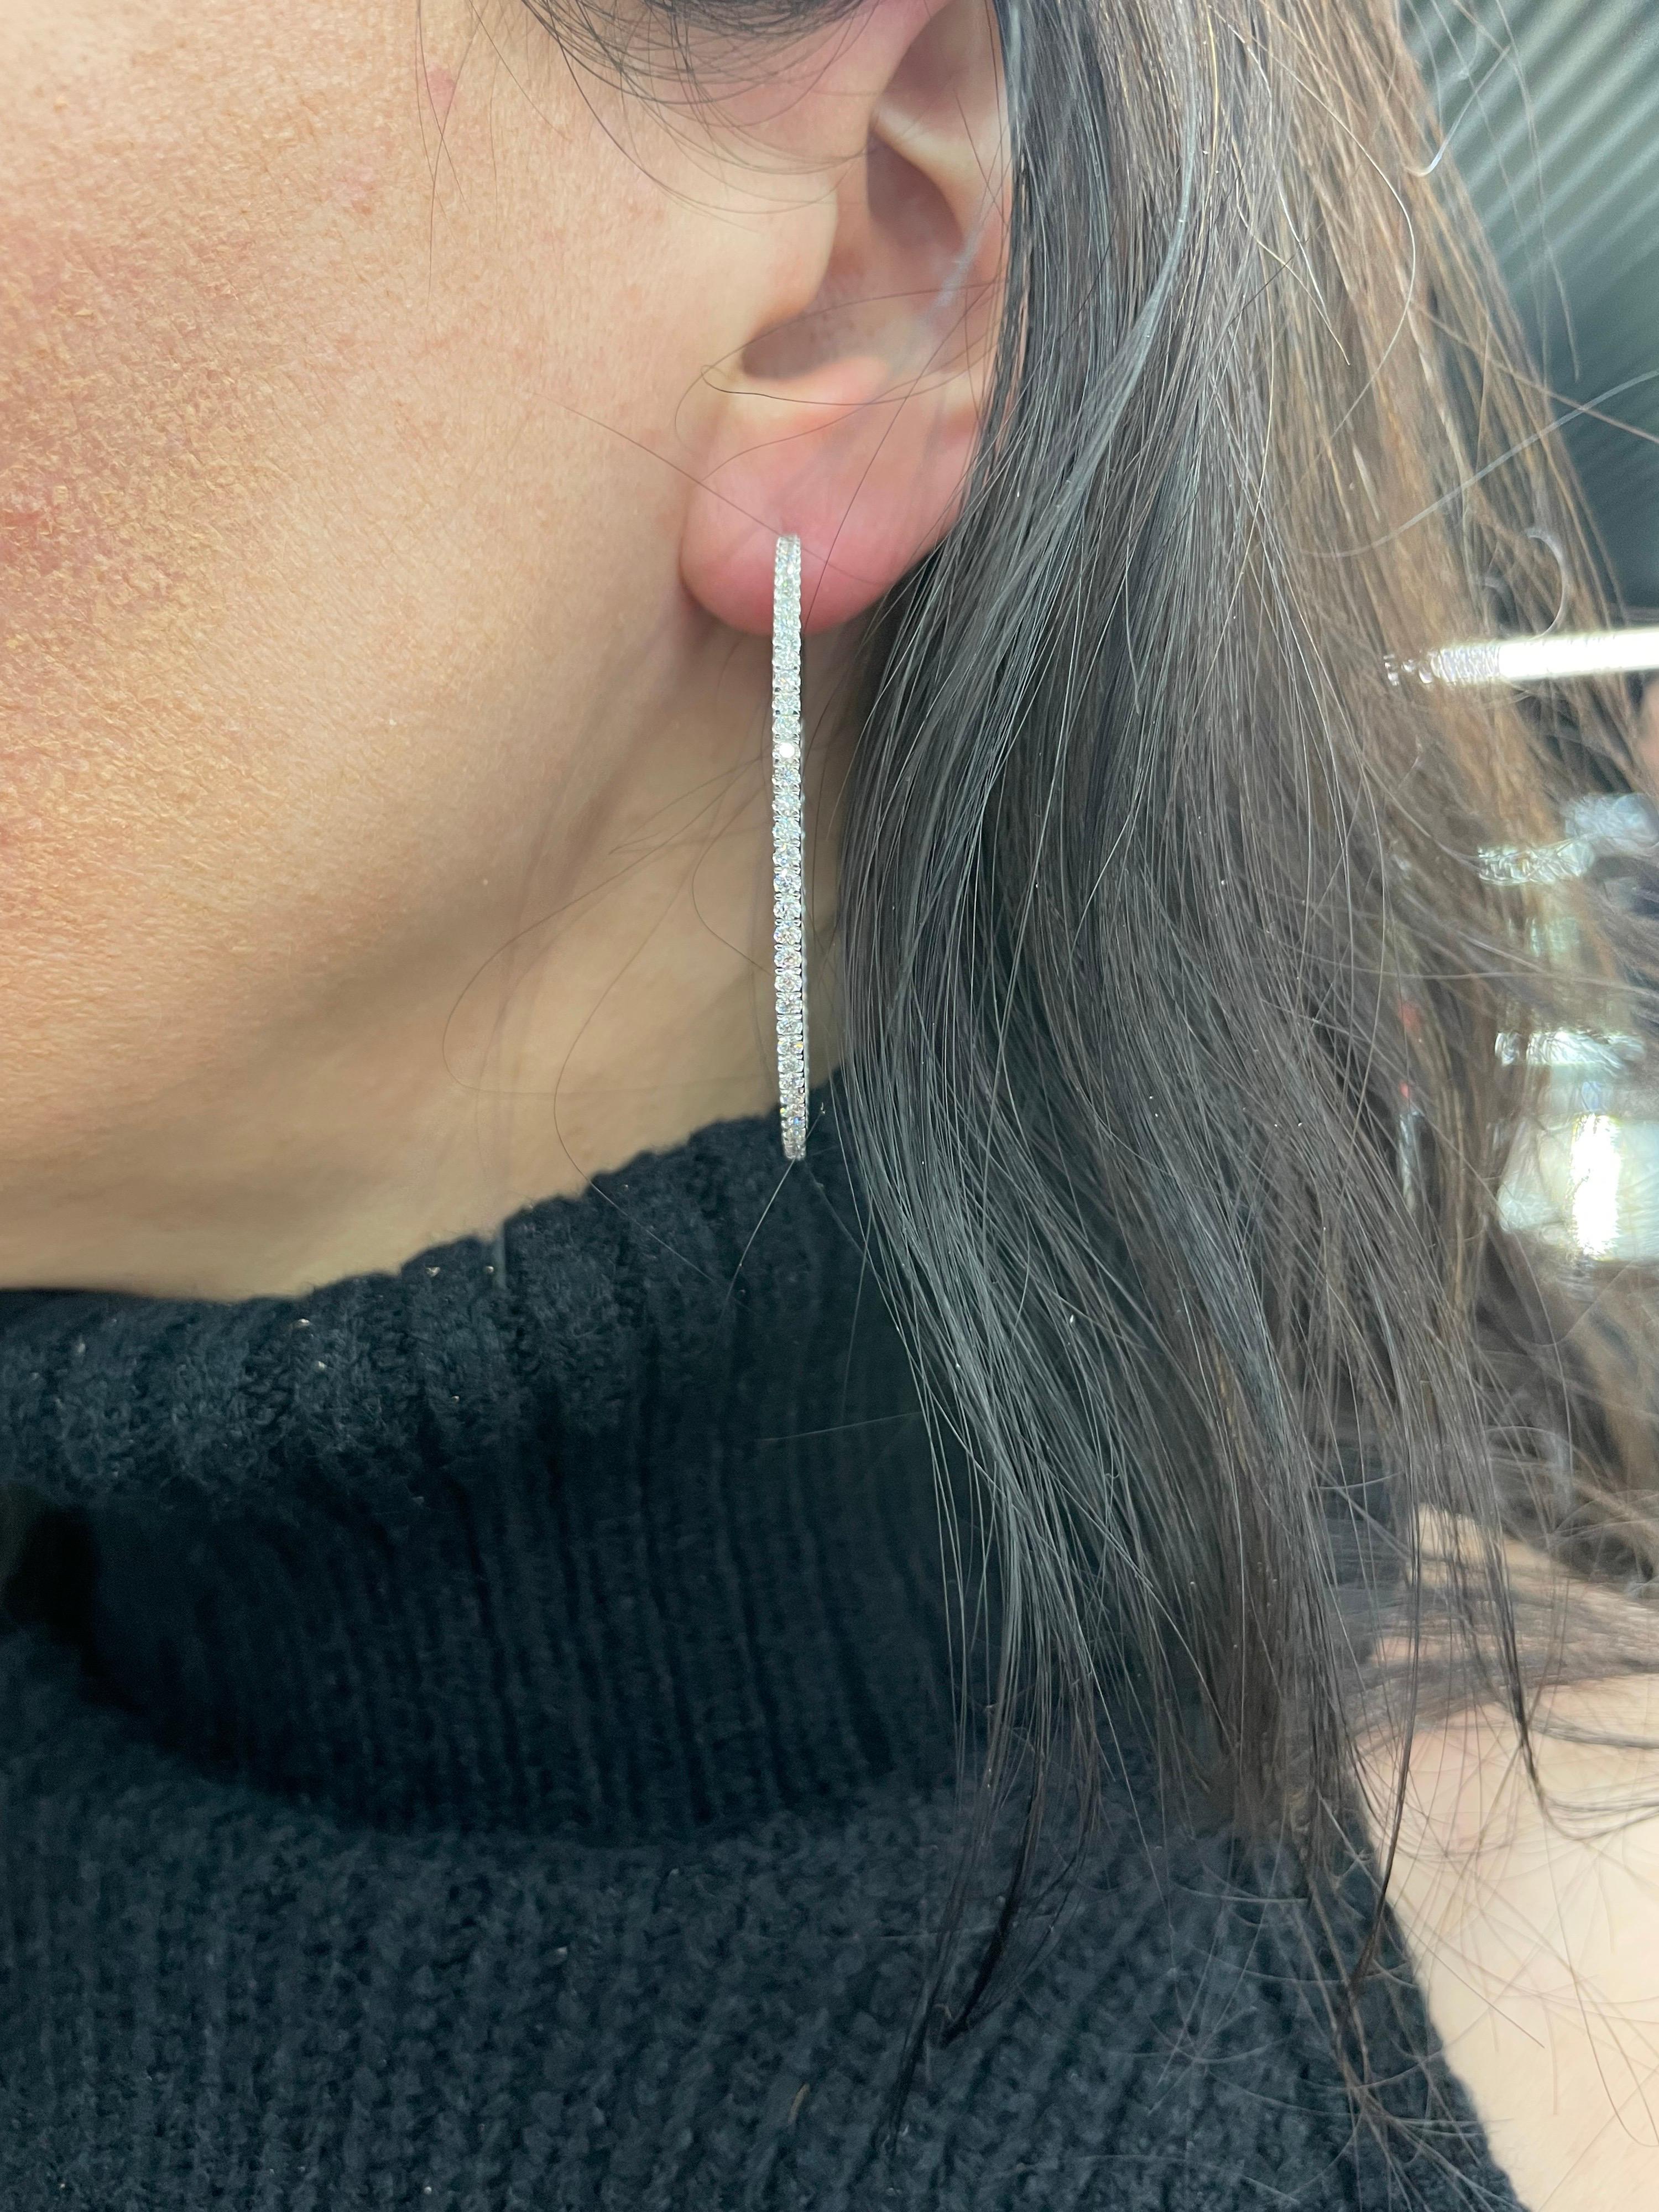 40mm diamond hoop earrings